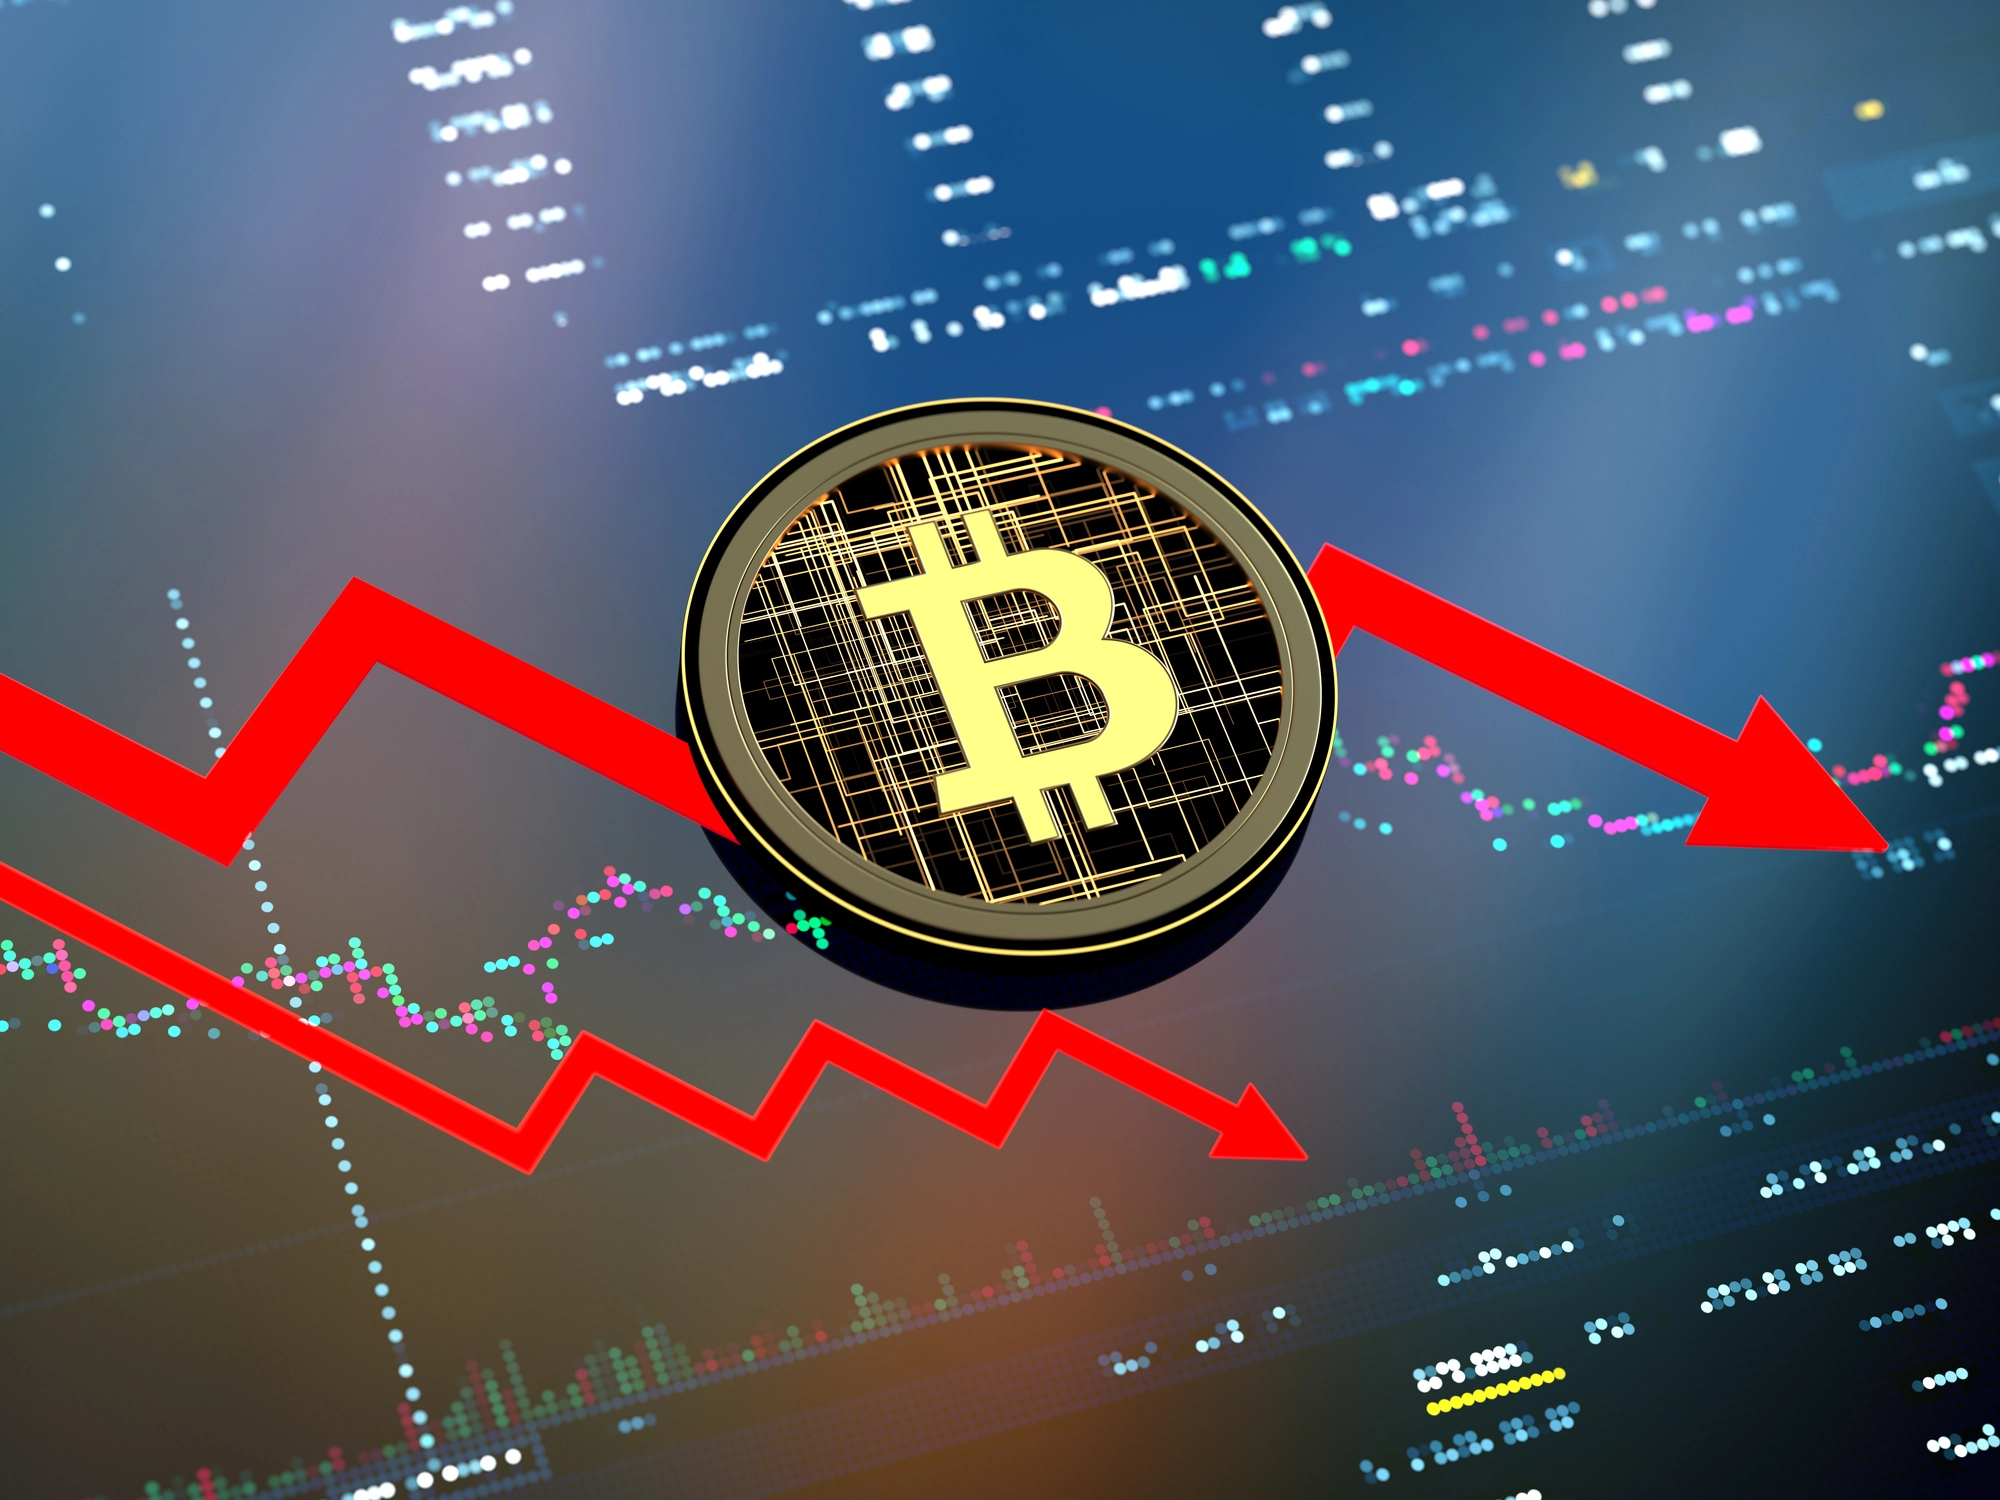 Why bitcoin fell